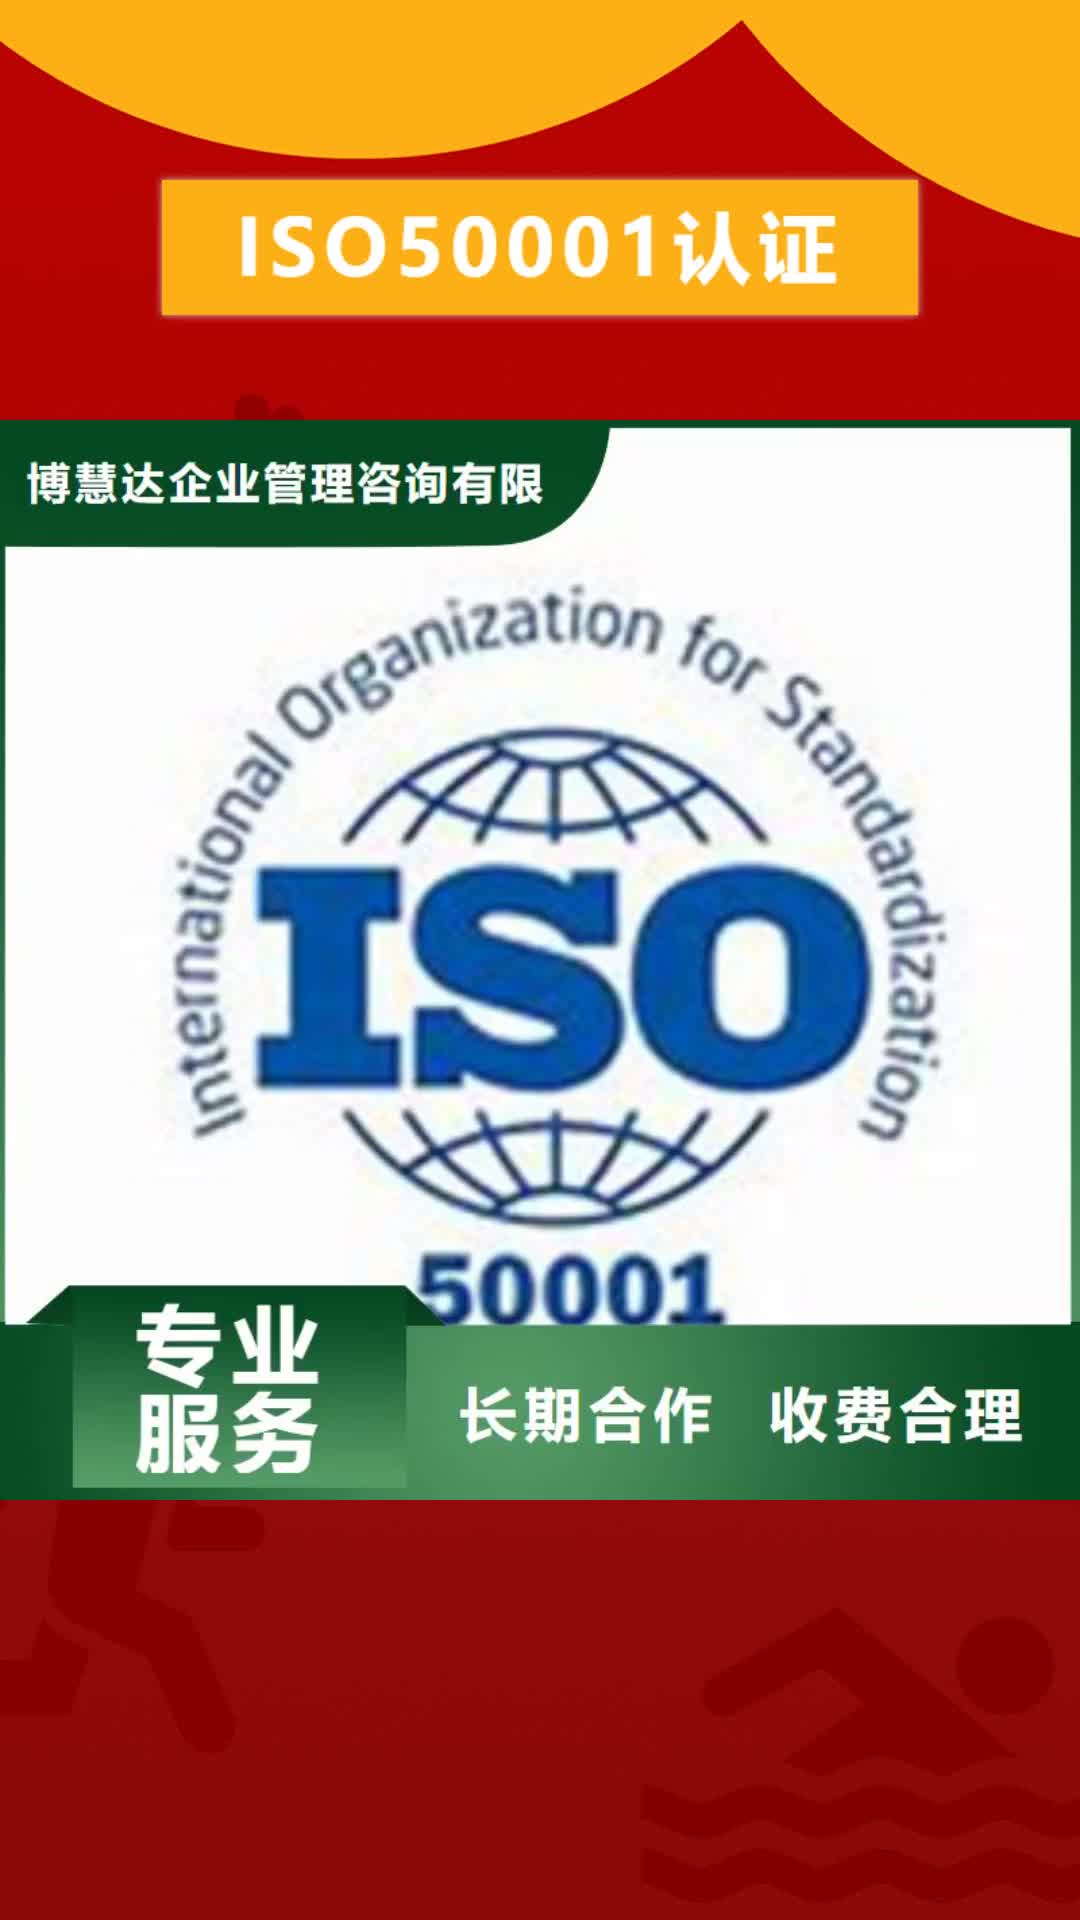 咸阳 ISO50001认证_【HACCP认证】专业承接